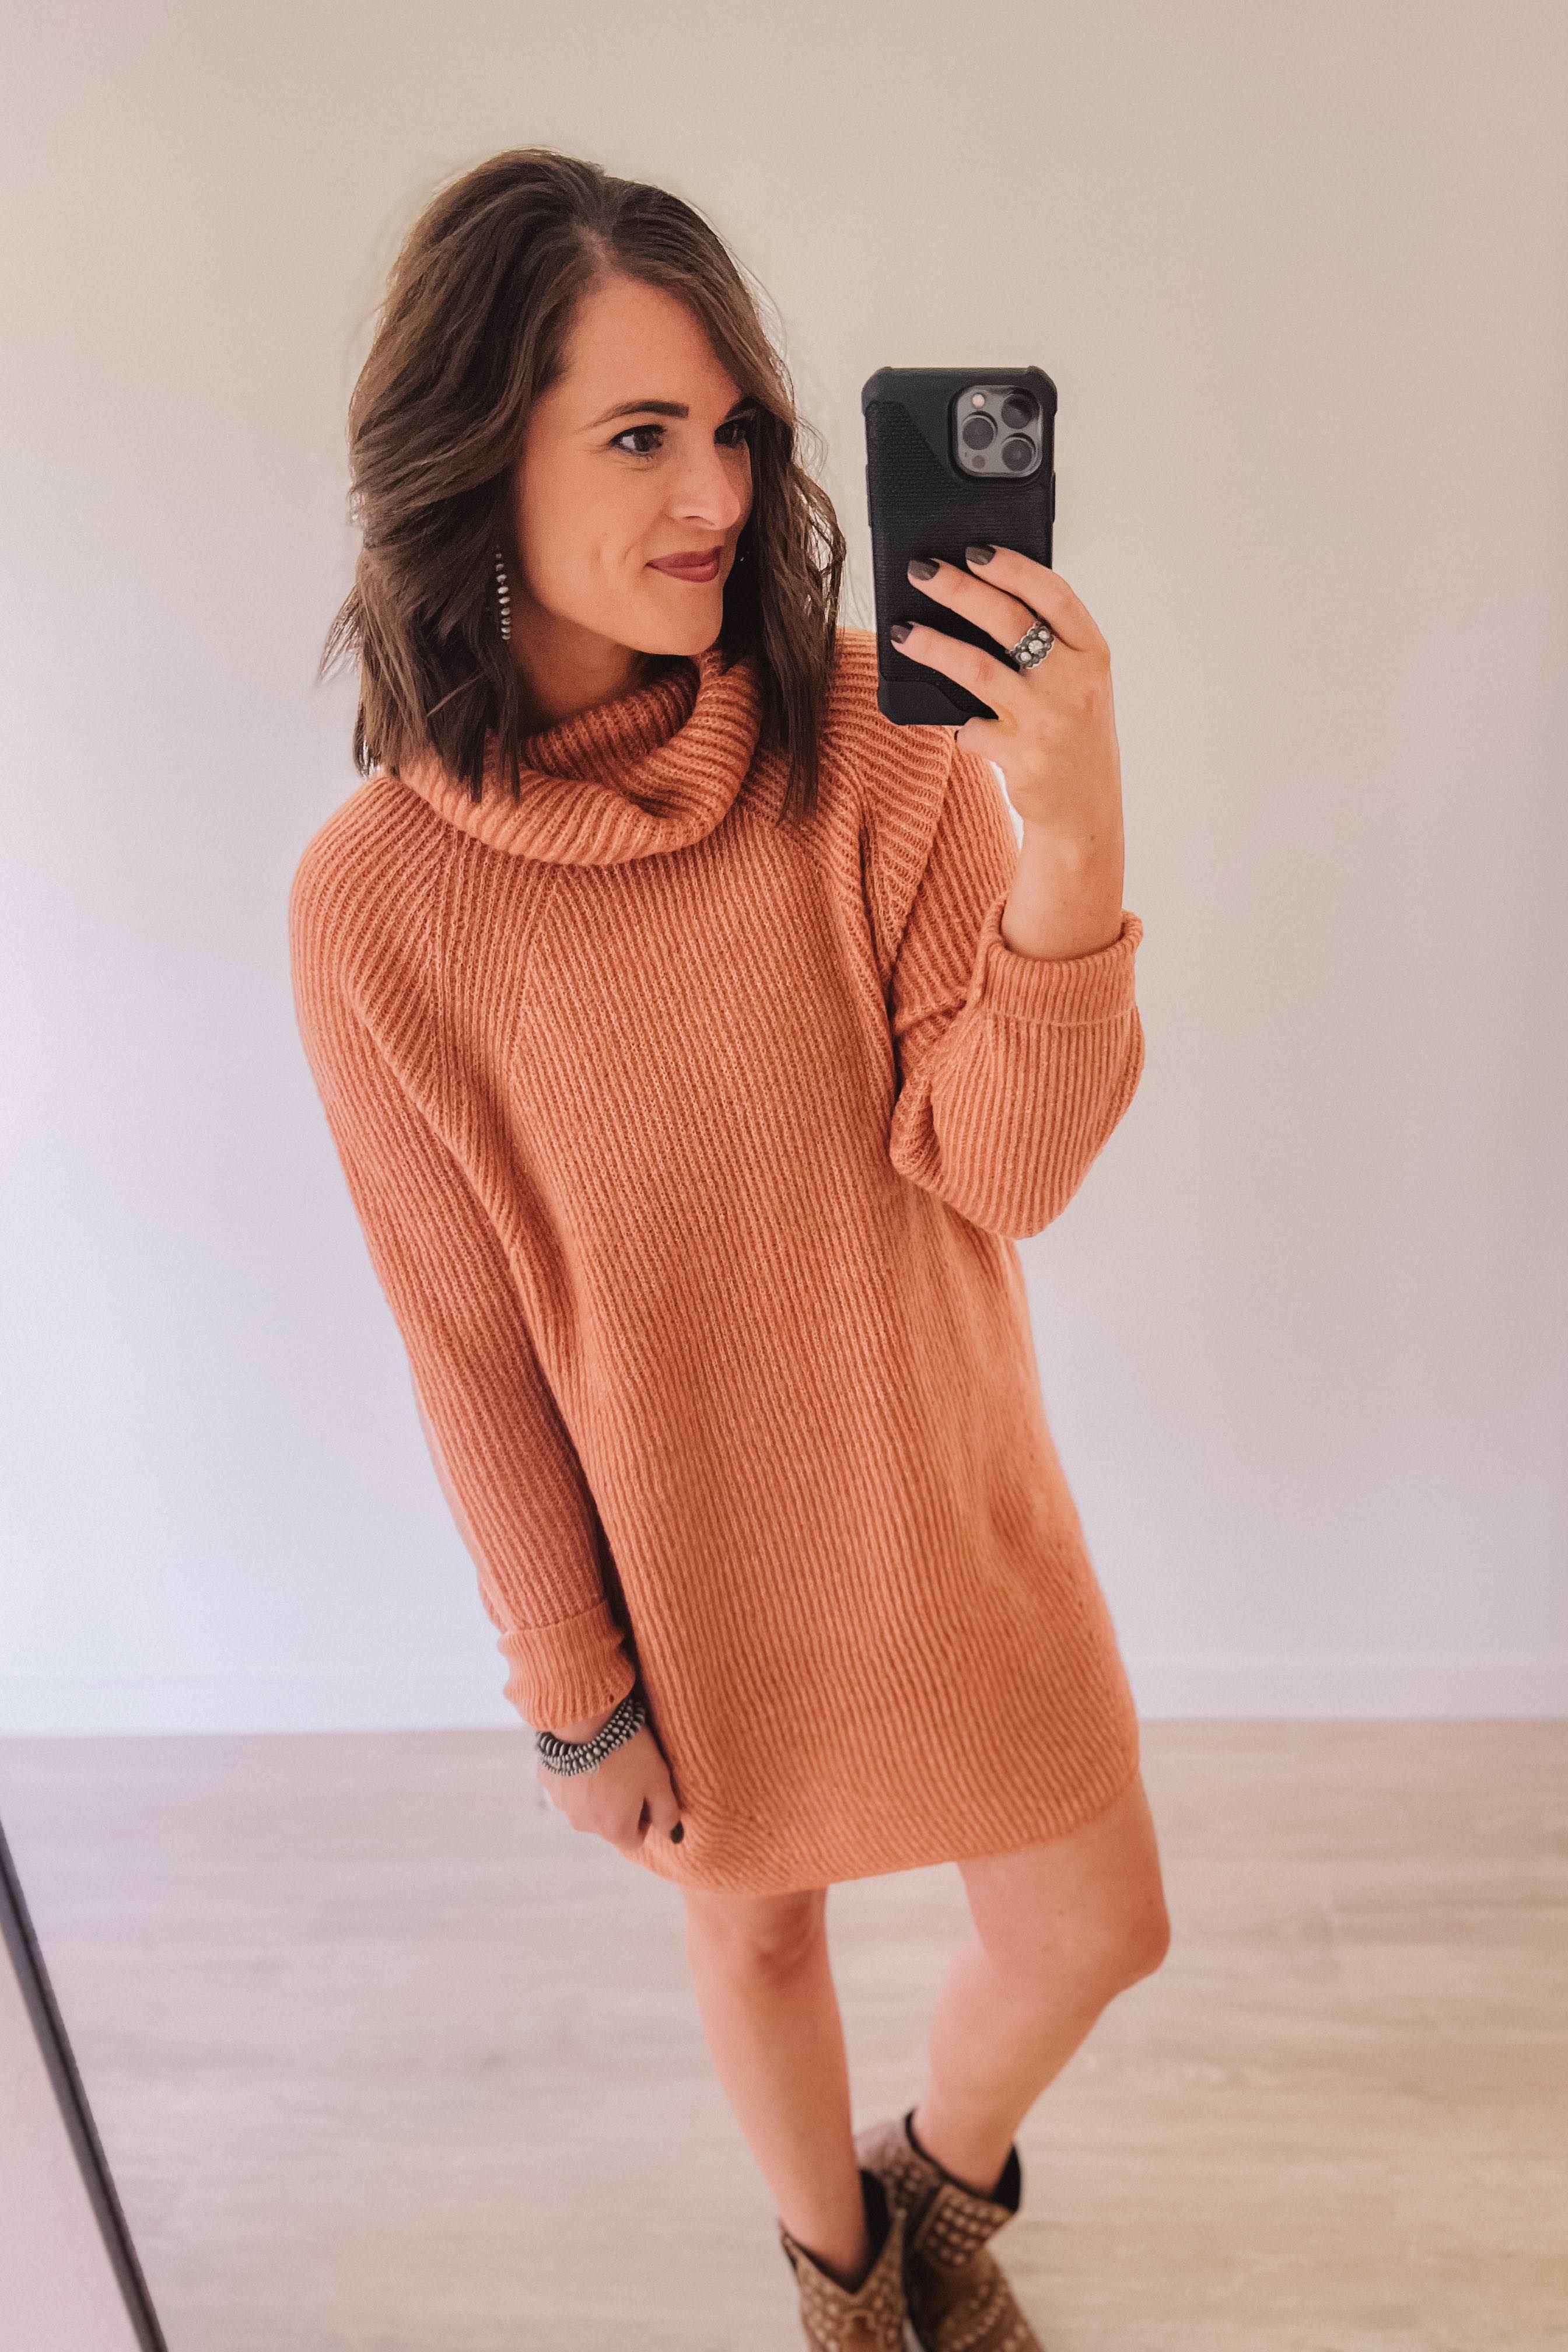 Pumpkin Pie Sweater Dress